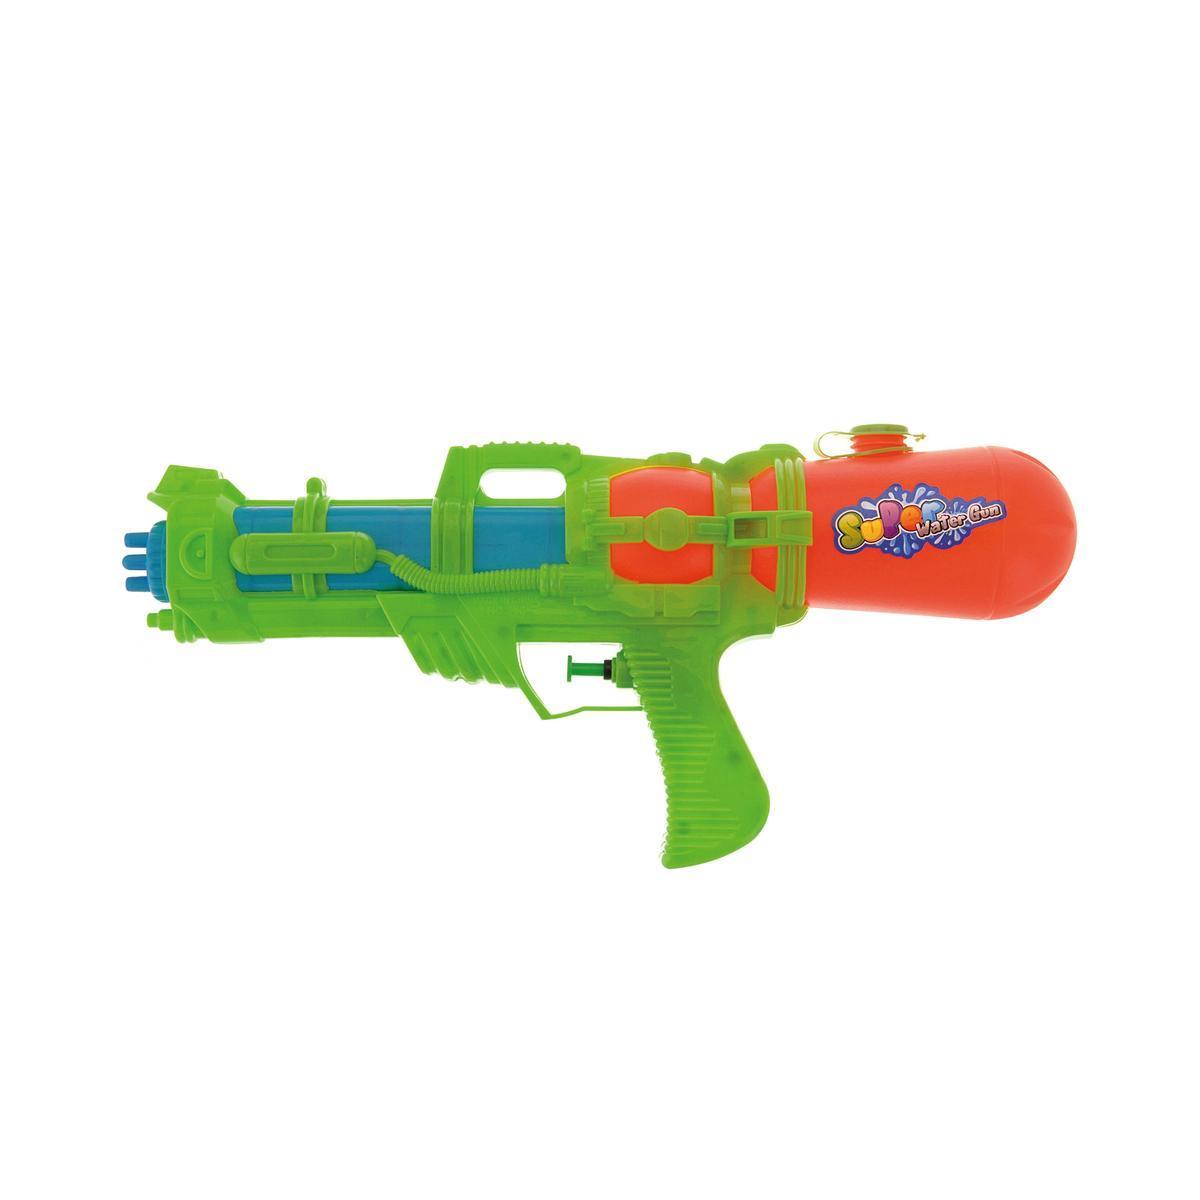 Fusil à eau - L 37 cm - Orange, vert, bleu